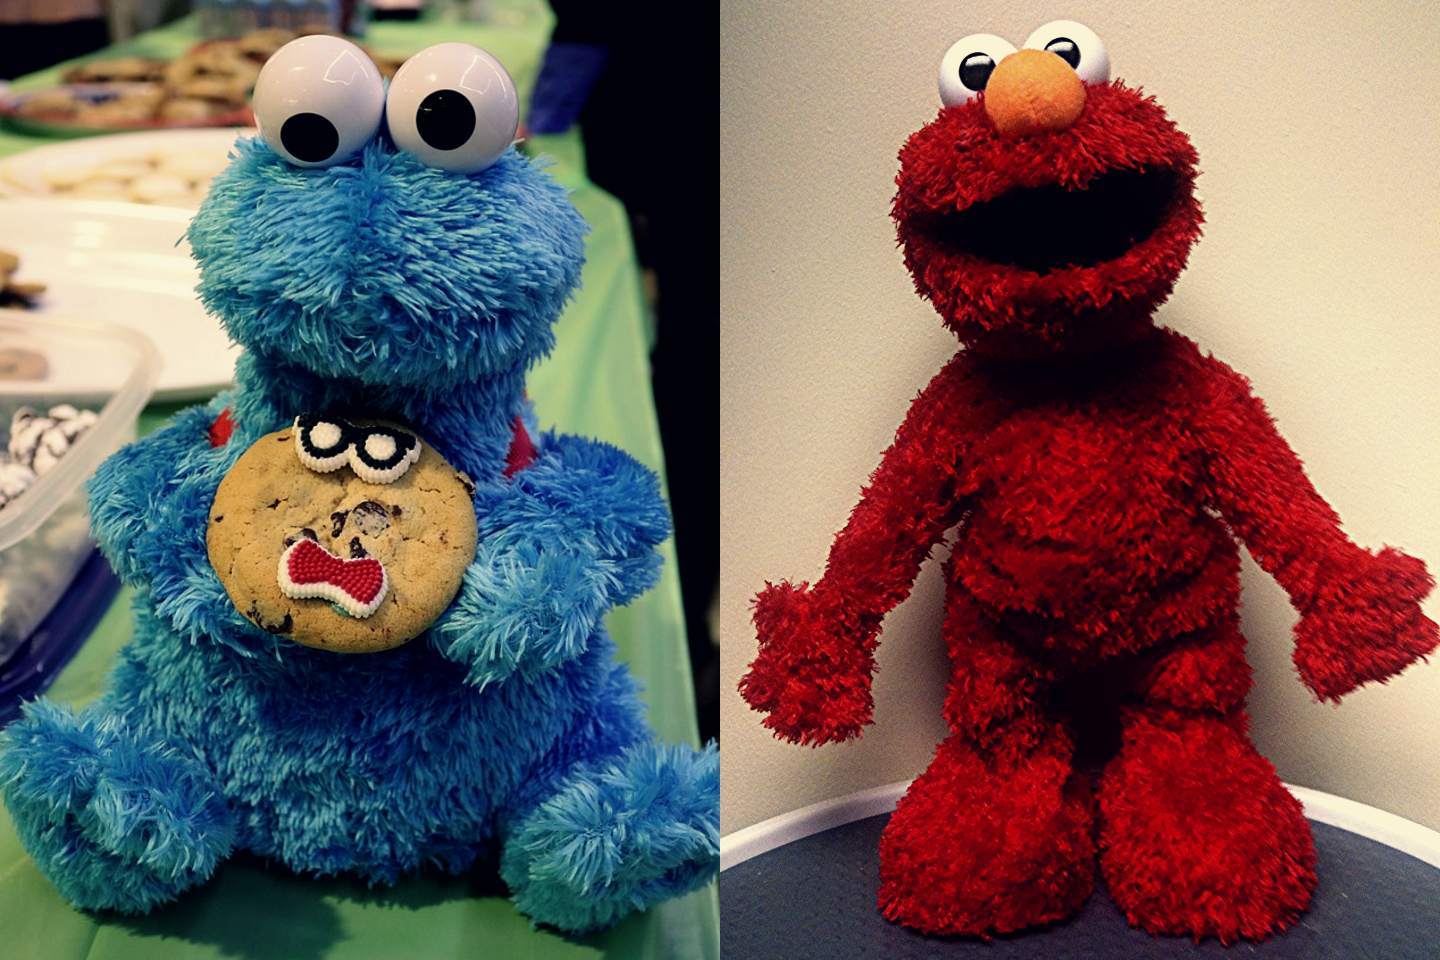 A Cookie Monster Doll és az Elmo Doll